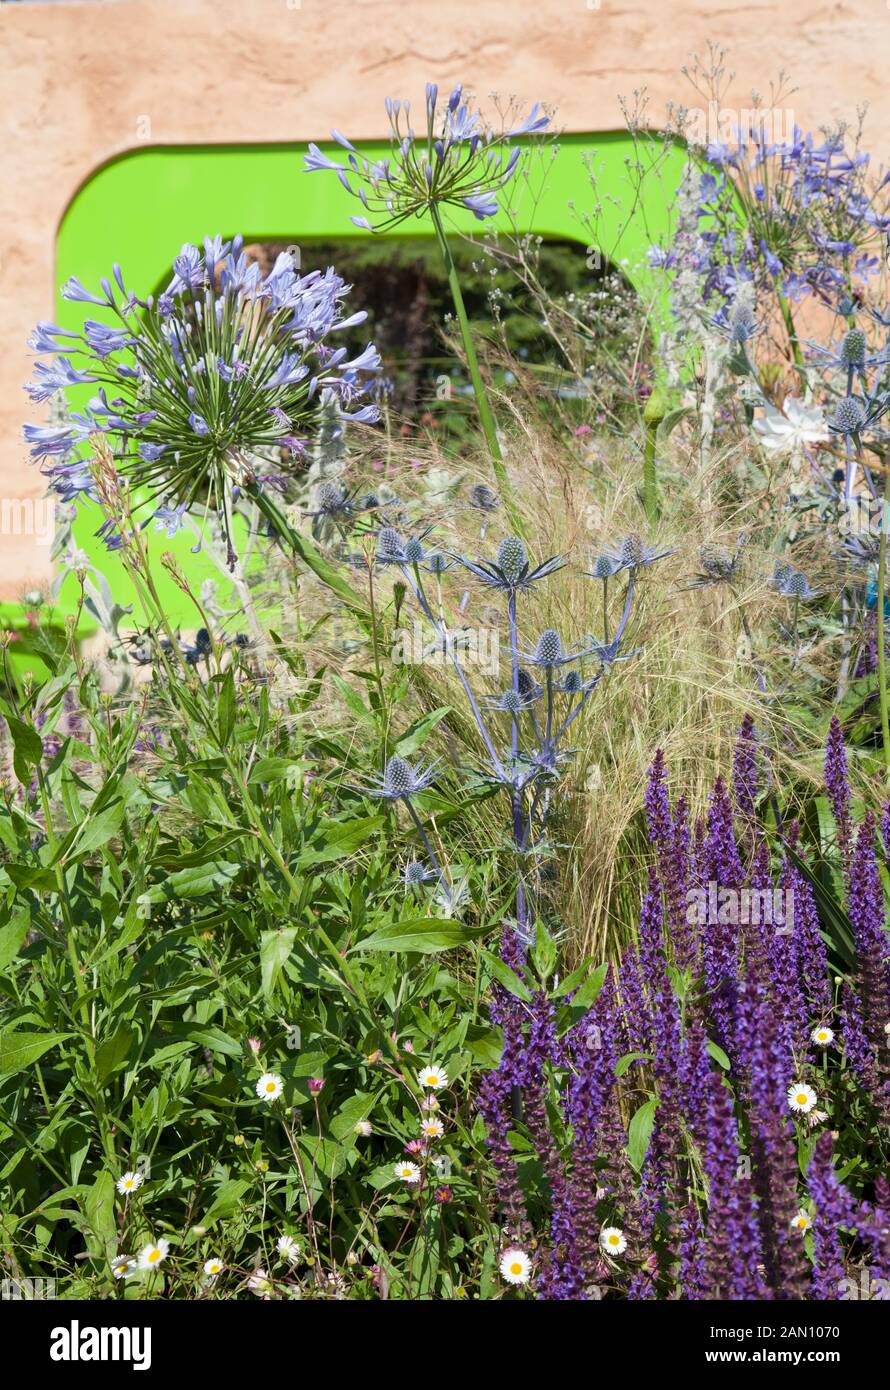 El jardín ECOVER POR MATTHEW CHILDS RHS Hampton Court Flower Show BEST IN SHOW y ganador de medalla de oro Foto de stock